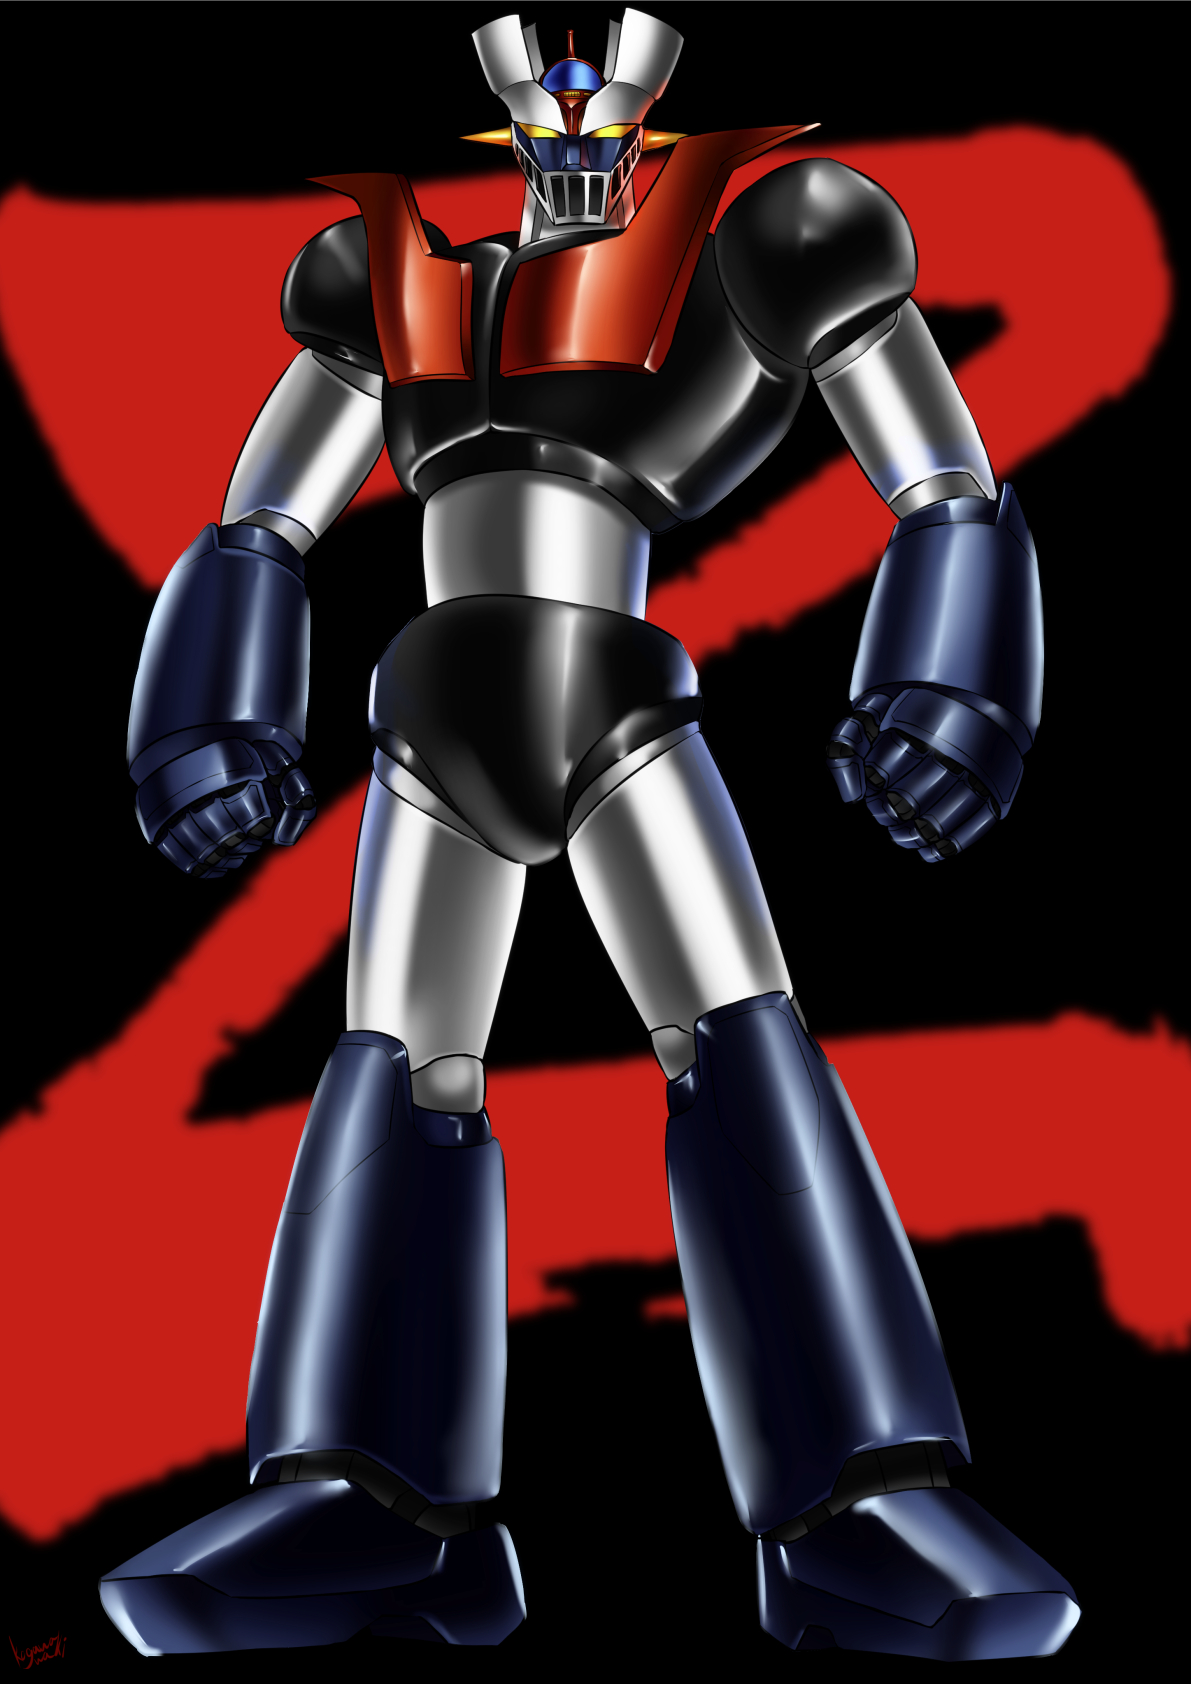 Anime 1191x1684 anime mechs Super Robot Taisen Mazinger Z Mazinger Z (Series) artwork digital art fan art